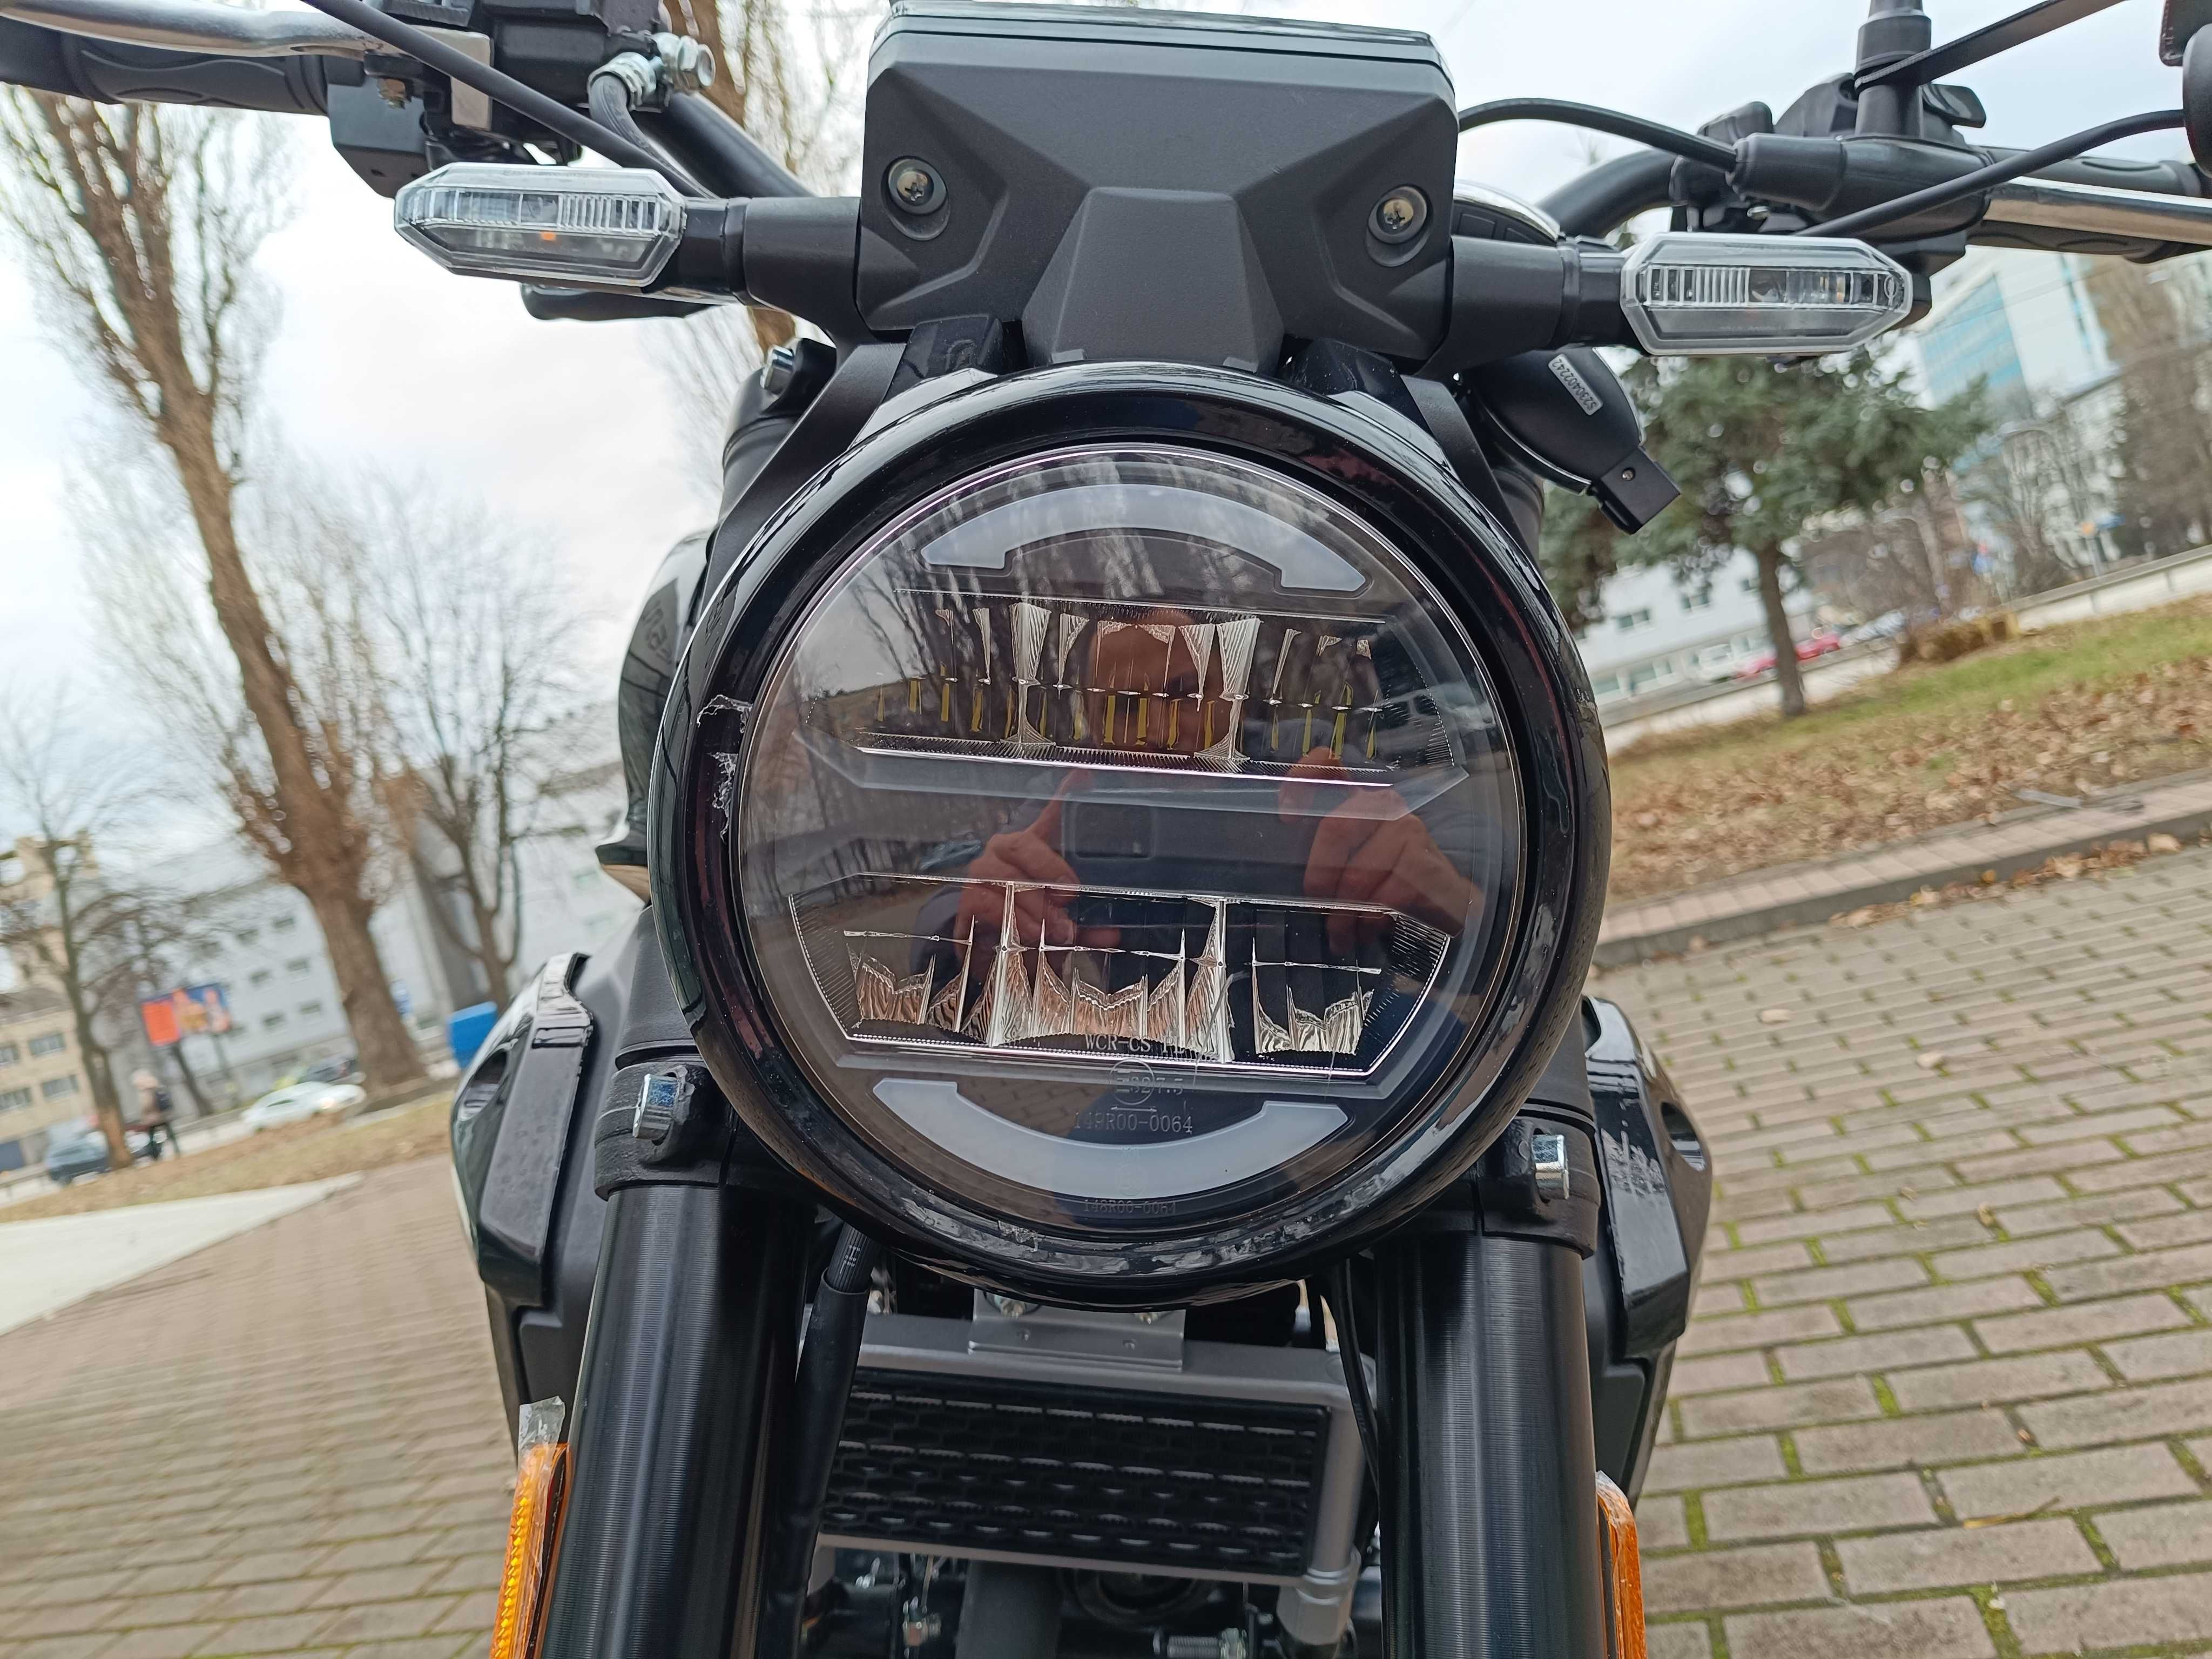 NEW!  Мотоцикл Zongshen Rider CBR 250  Гарантія/ Сервіс/Доставка